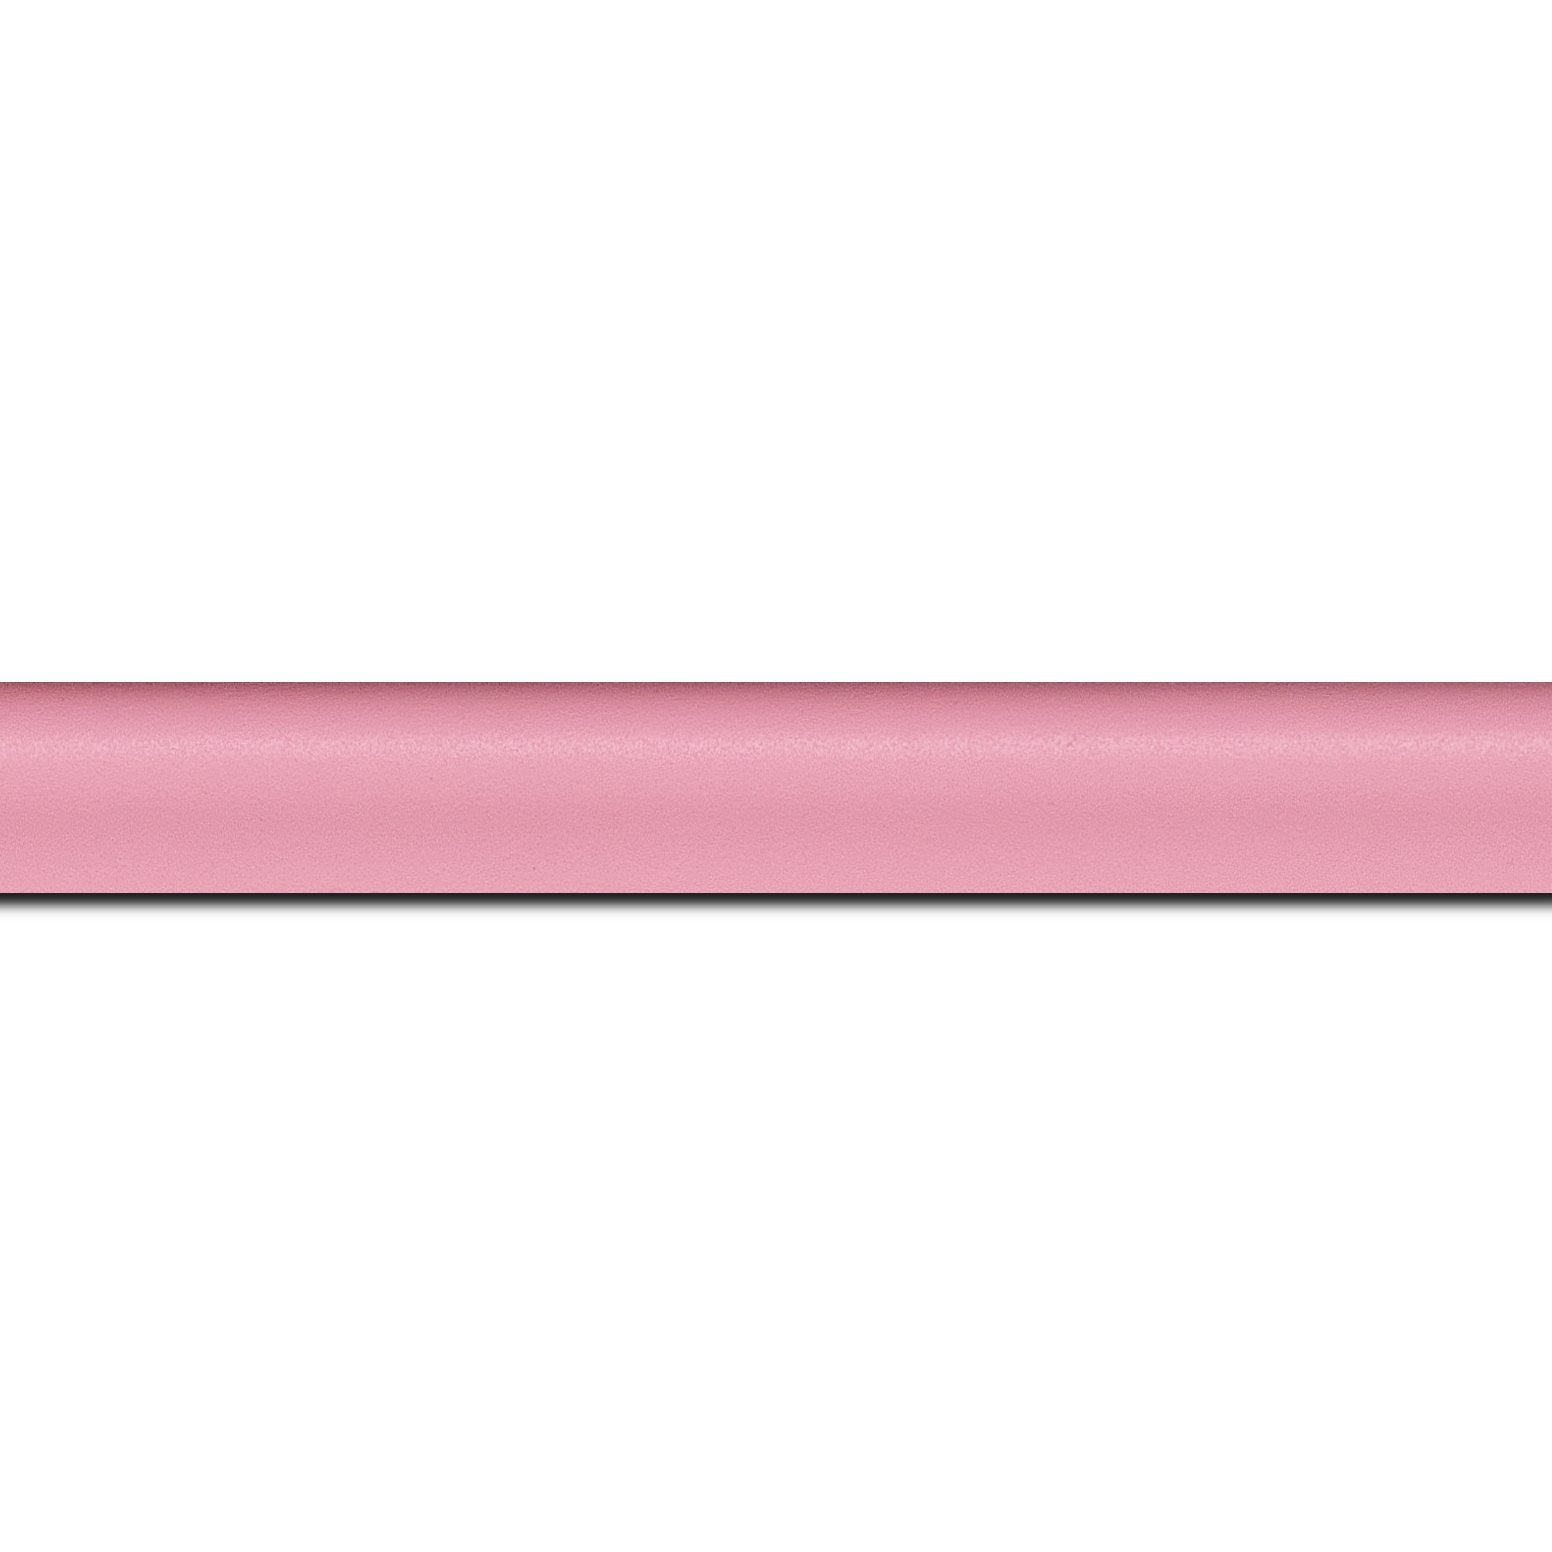 Pack par 12m, bois profil incurvé largeur 2.1cm couleur rose tendre satiné (longueur baguette pouvant varier entre 2.40m et 3m selon arrivage des bois)